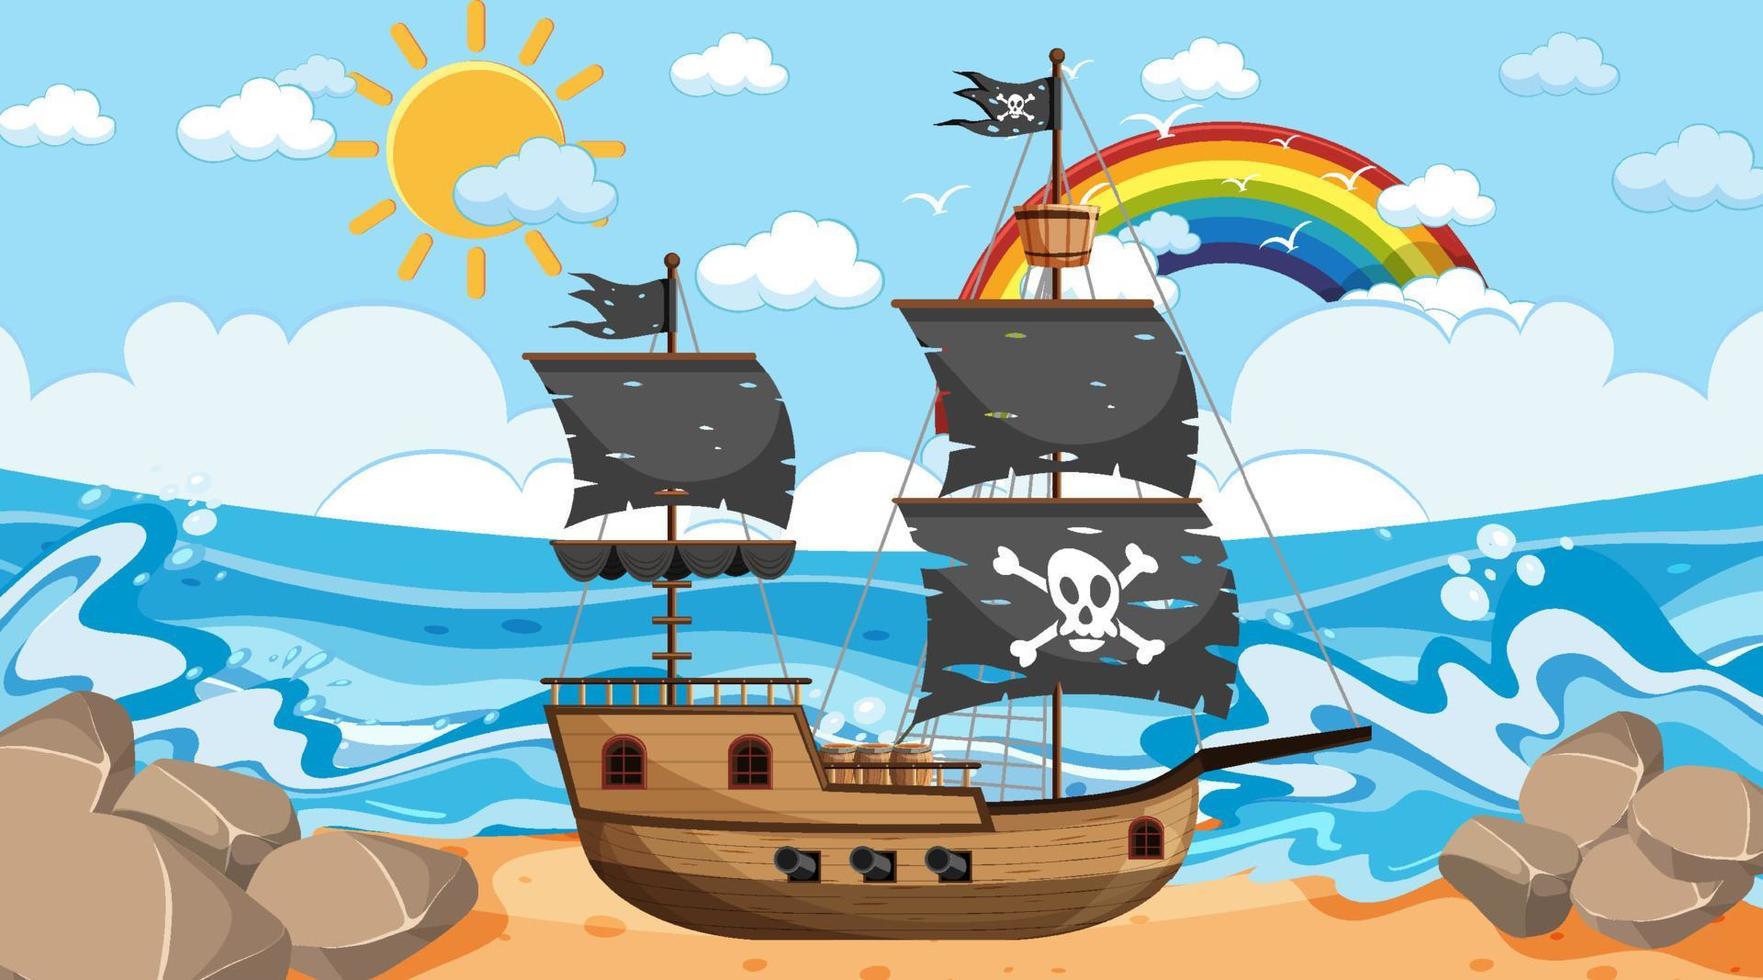 oceano com navio pirata na cena do dia em estilo cartoon vetor